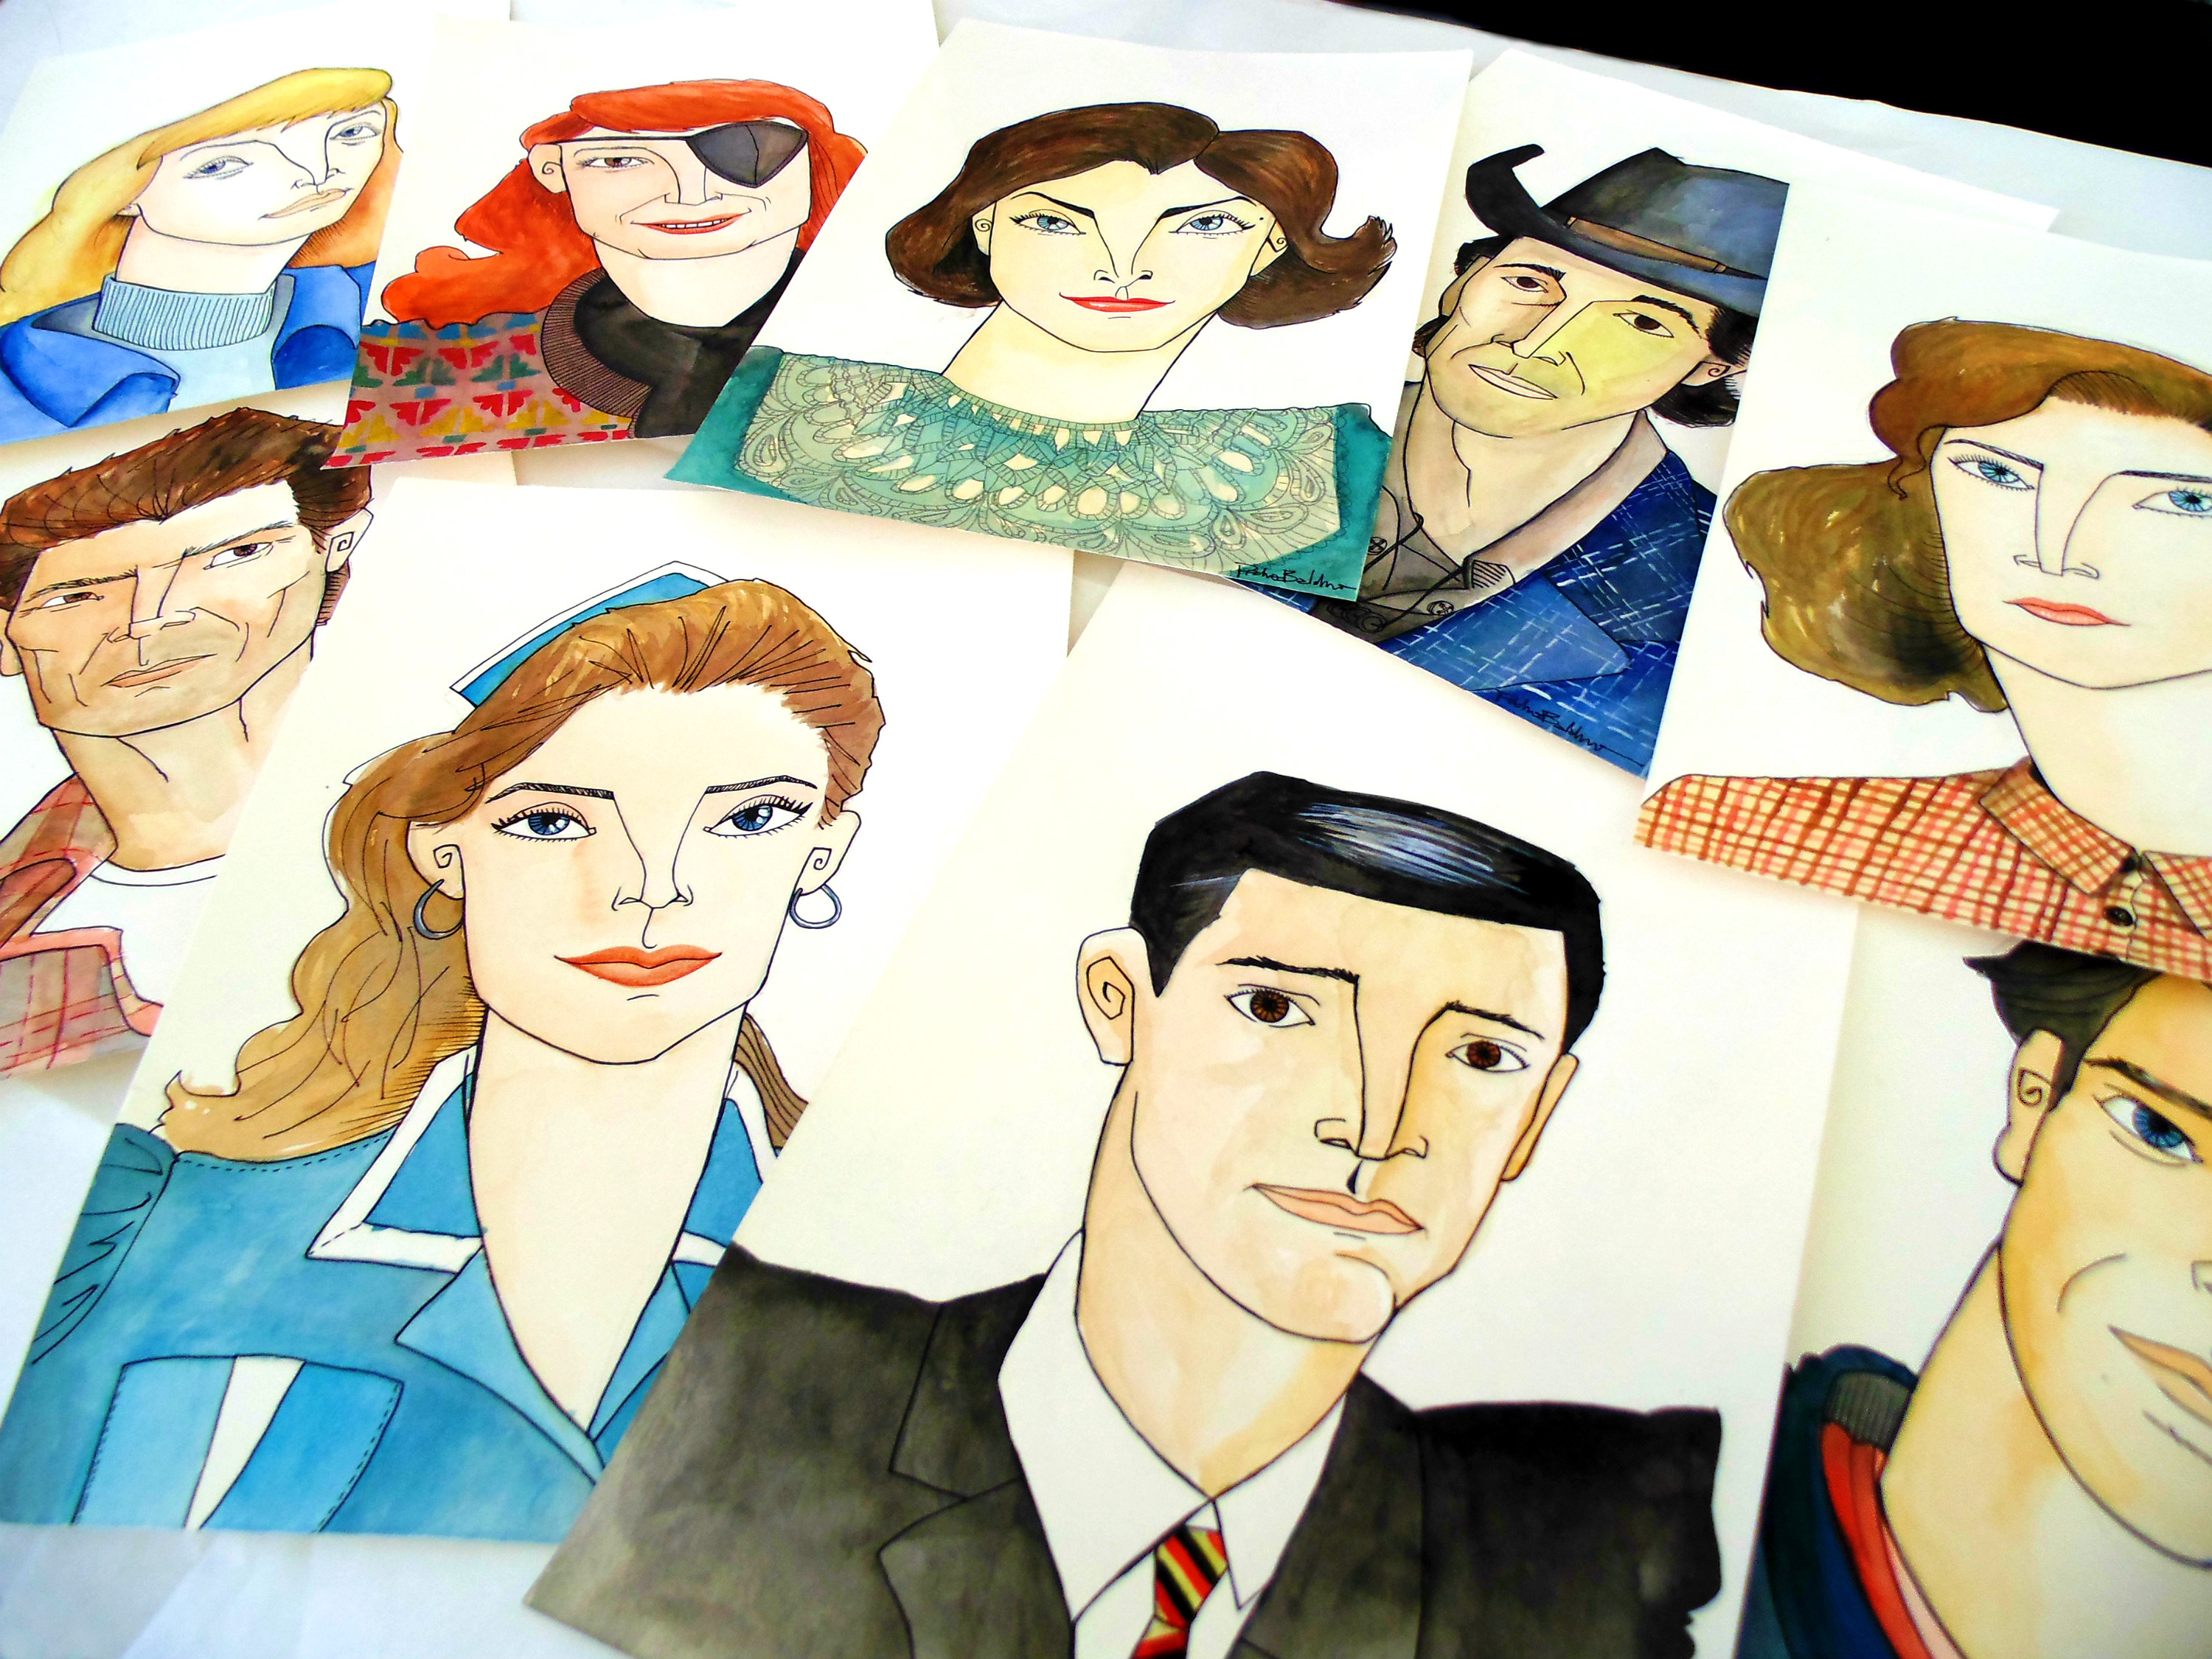 Artista potiguar faz desenhos em homenagem a série Twin Peaks